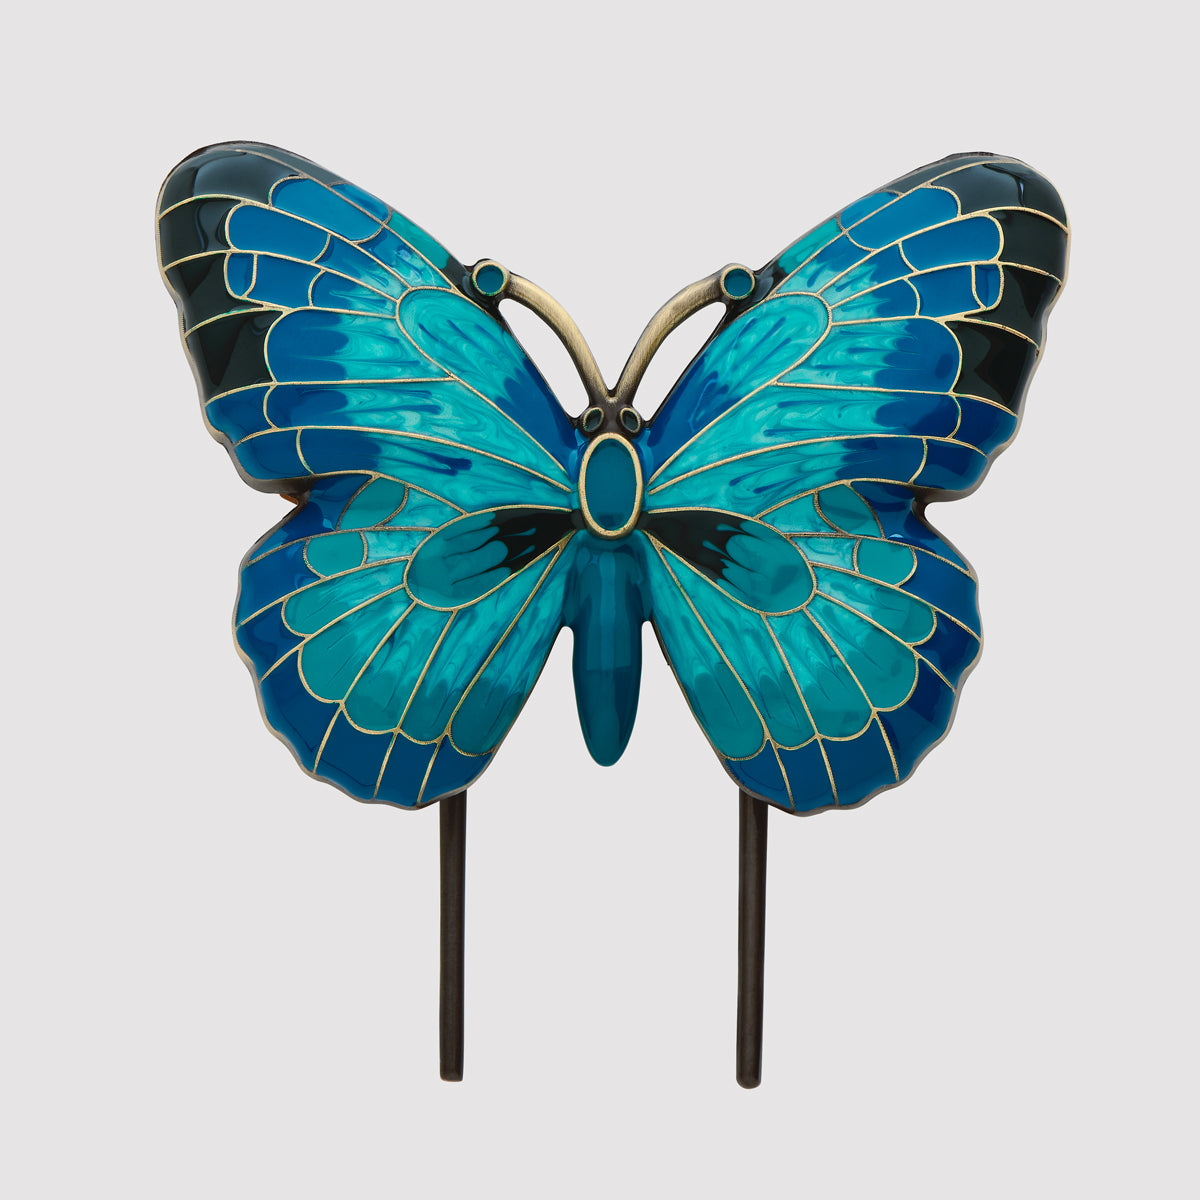 Esterbrook vlinderboekhouder - groenblauw